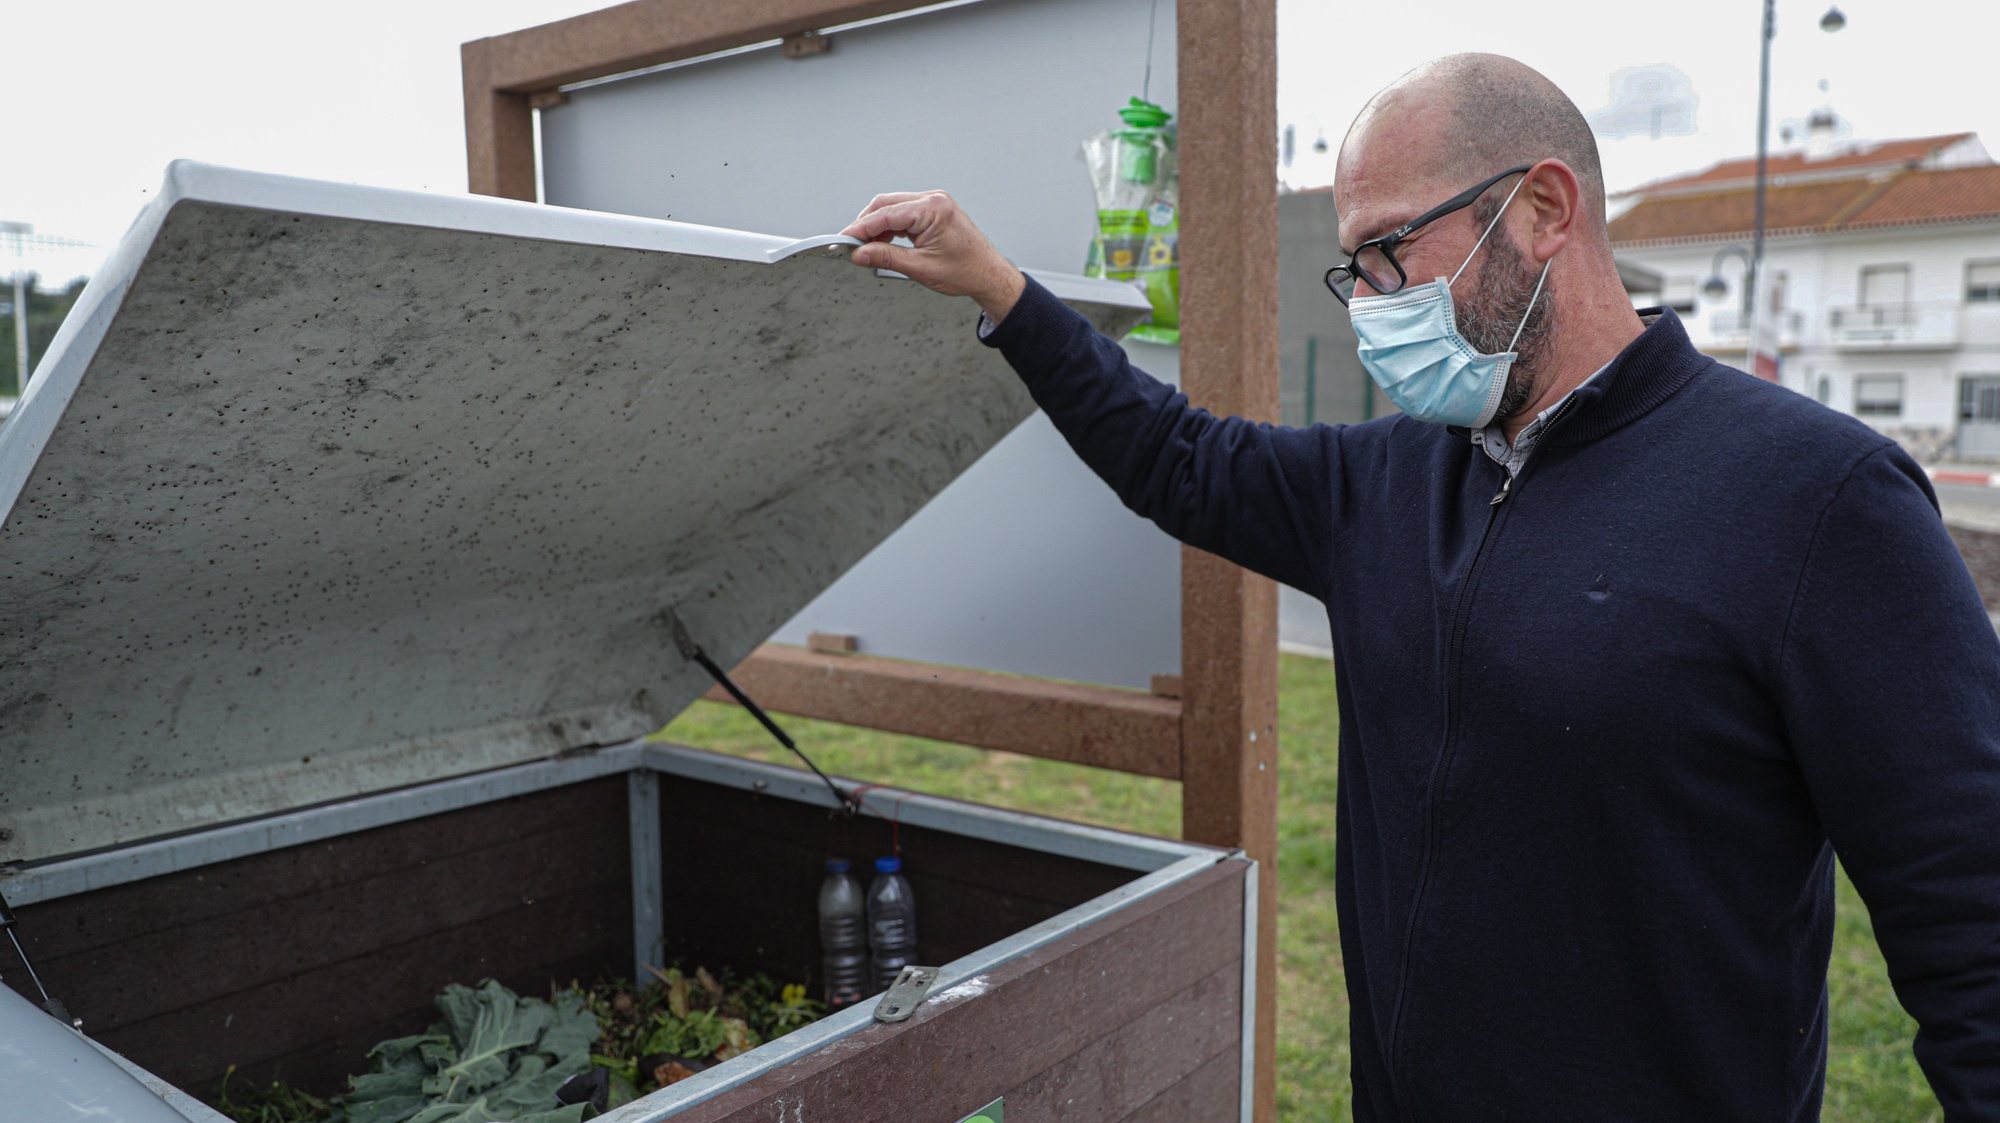 Silves lança campanha de implementação de compostagem doméstica e compostagem comunitária direcionada a todas as freguesias do concelho, em Silves, 22 de fevereiro de 2021. (ACOMPANHA TEXTO DA LUSA DO DIA 01 DE MARÇO DE 2021). LUÍS FORRA/LUSA